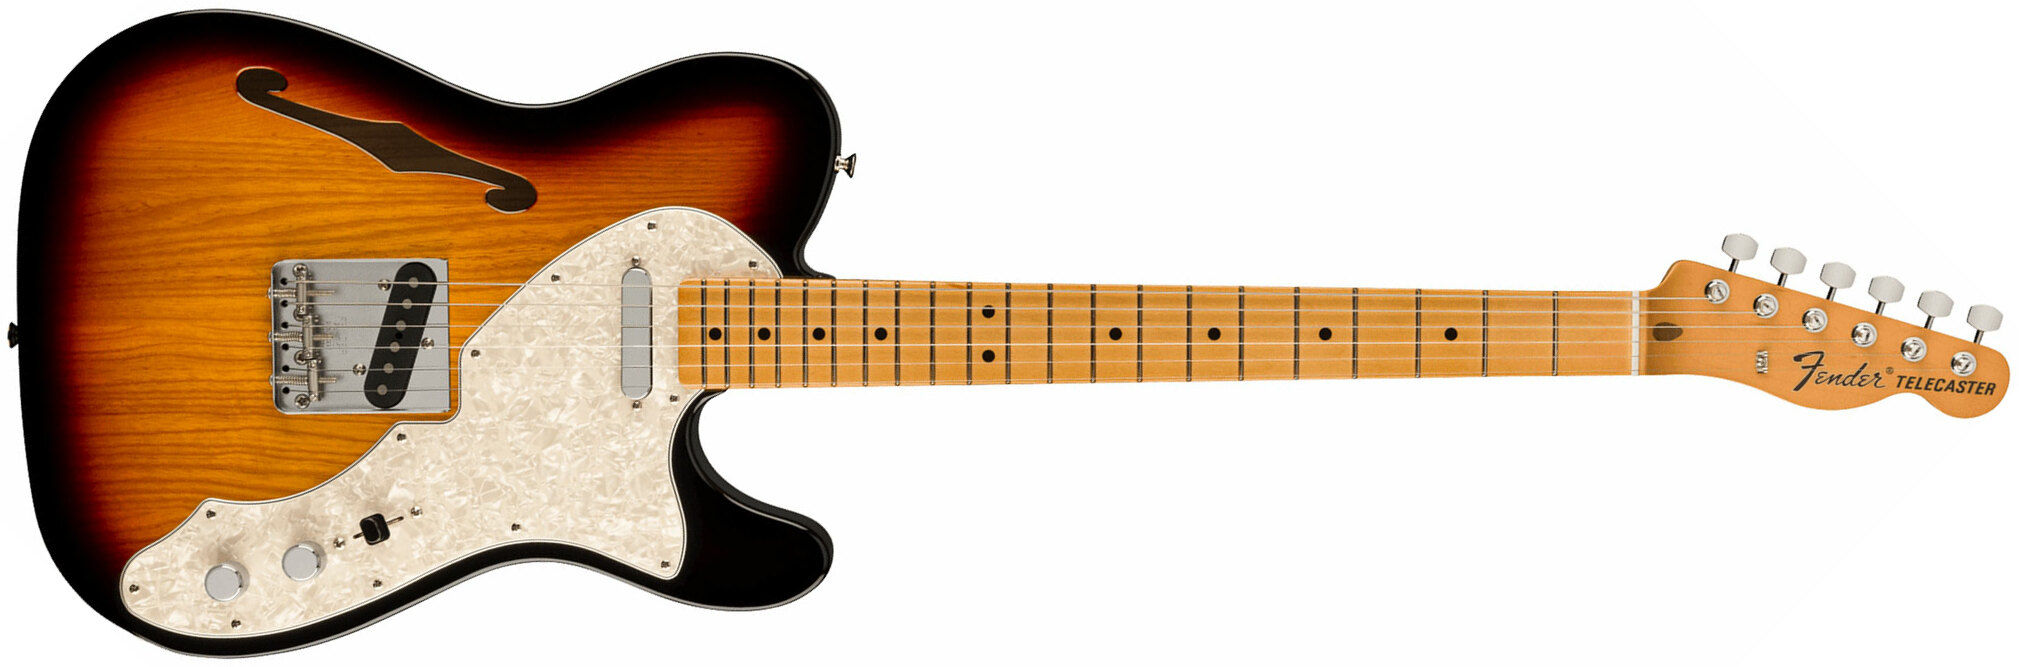 Fender Tele 60s Thinline Vintera 2 Mex 2s Ht Mn - 3-color Sunburst - Semi-hollow electric guitar - Main picture